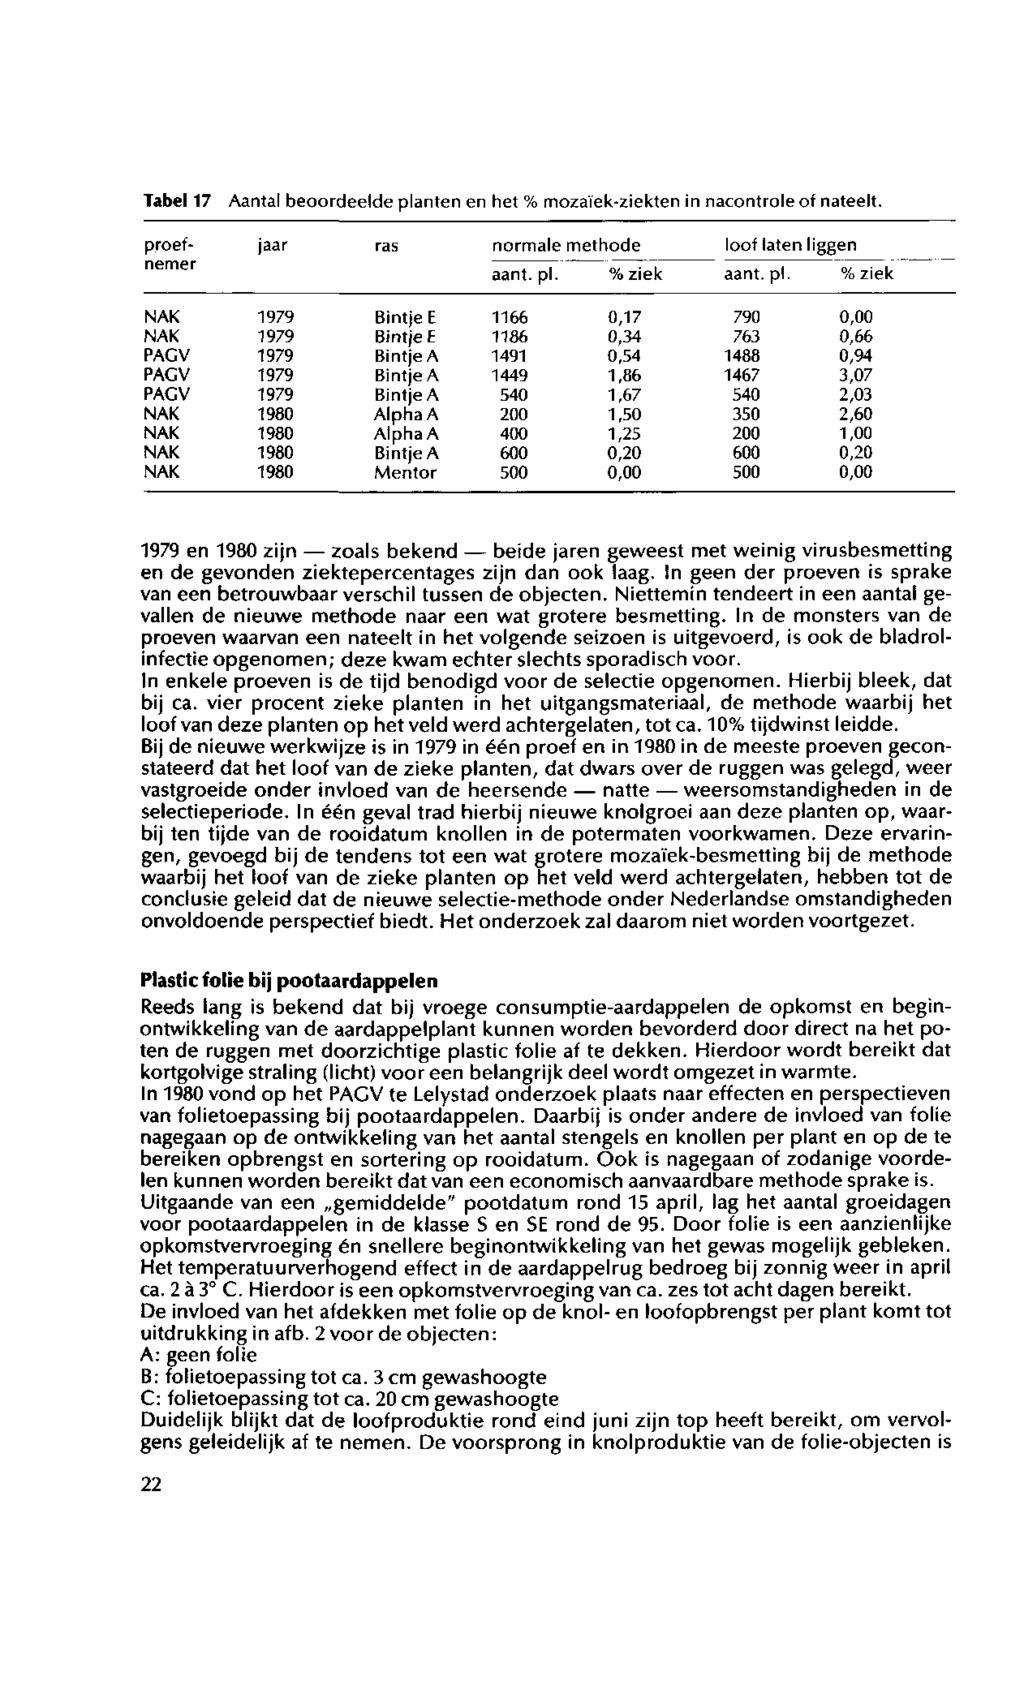 Tabel 17 Aantal beoordeelde planten en het % mozaïek-ziekten in nacontrole of nateelt. jaar ras normale rr lethode aant. pi. % ziek loof laten proefnemer aant.